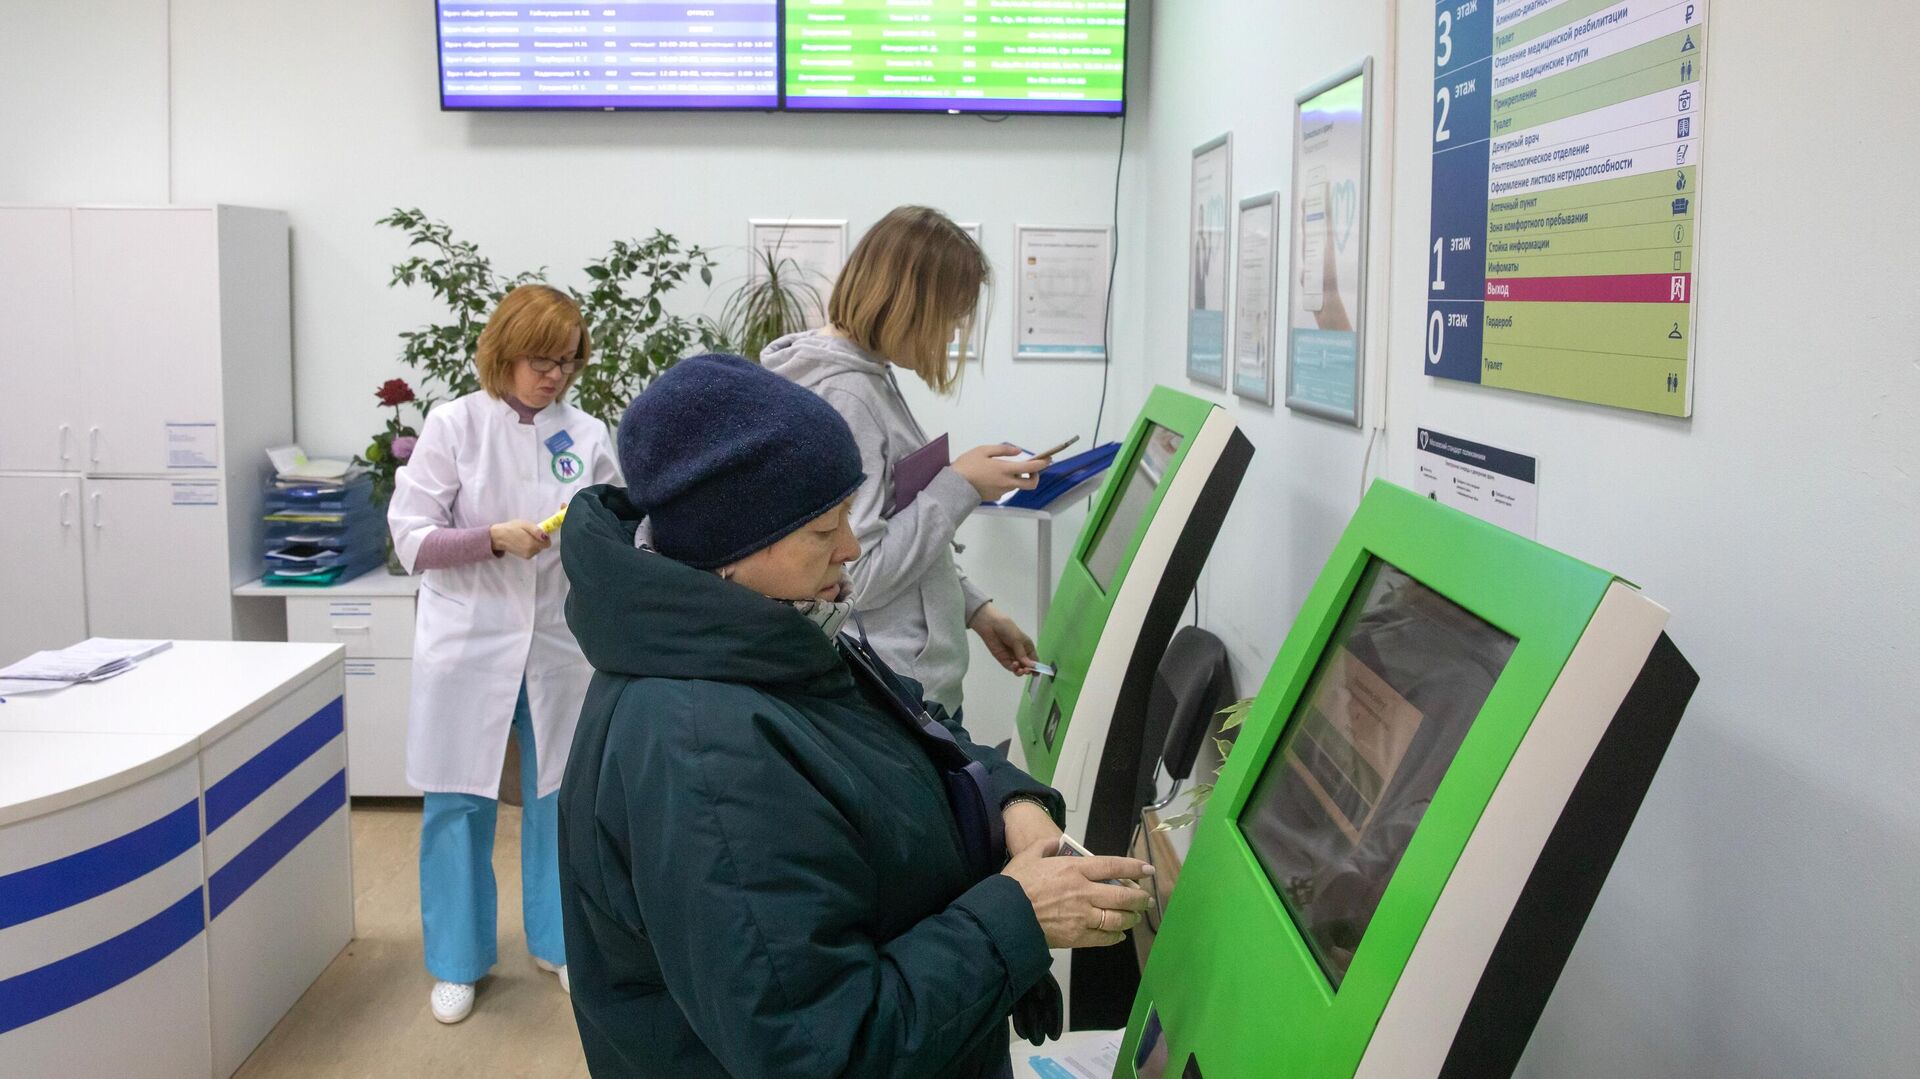  Пациенты записываются на прием к врачу через электронные терминалы в Москве   - РИА Новости, 1920, 30.12.2020